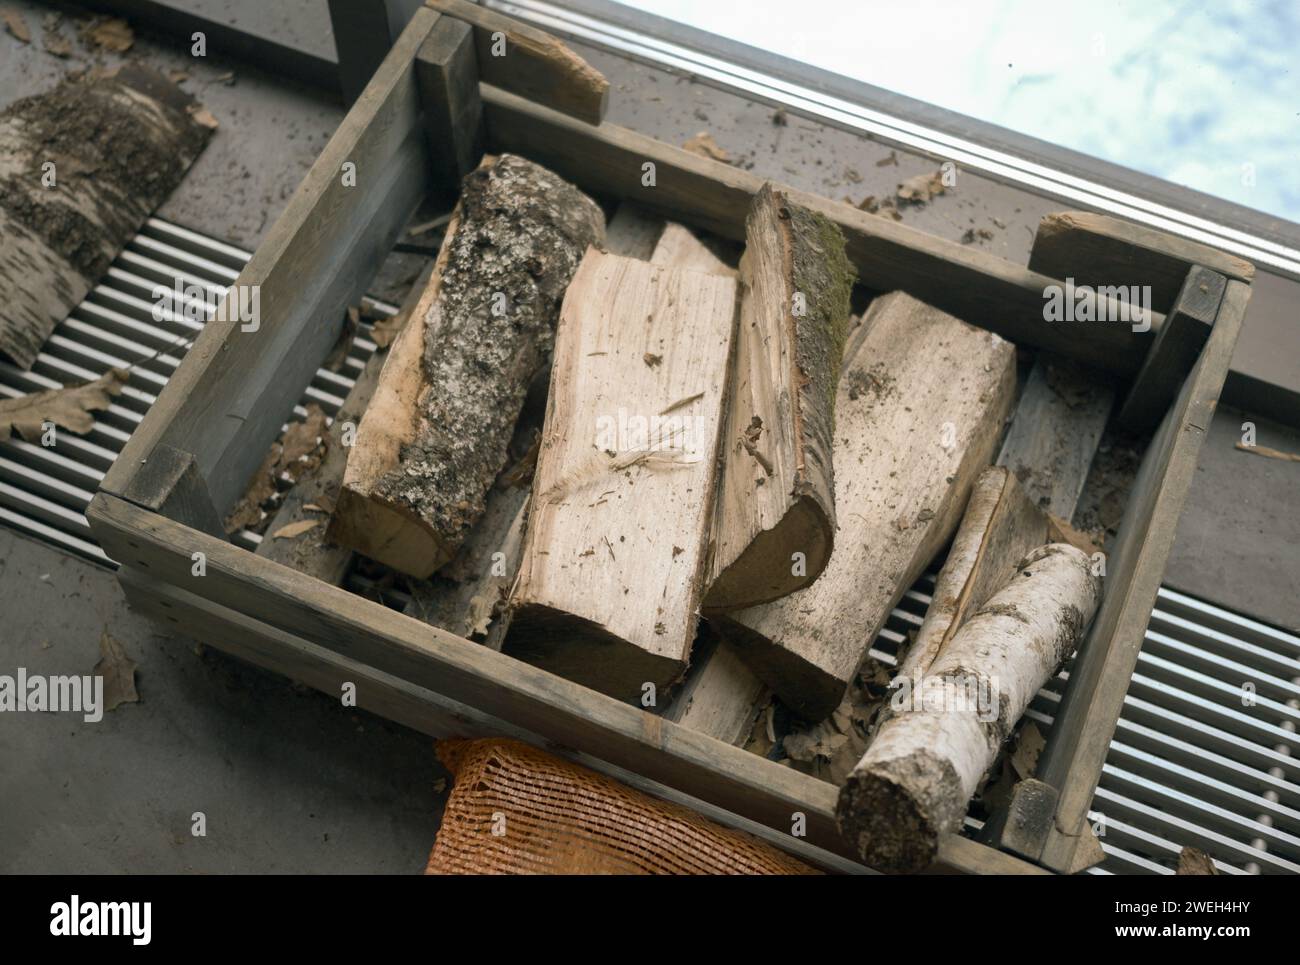 Trocknen von Brennholz in einer Box auf dem Bodenheizkörper Stockfoto